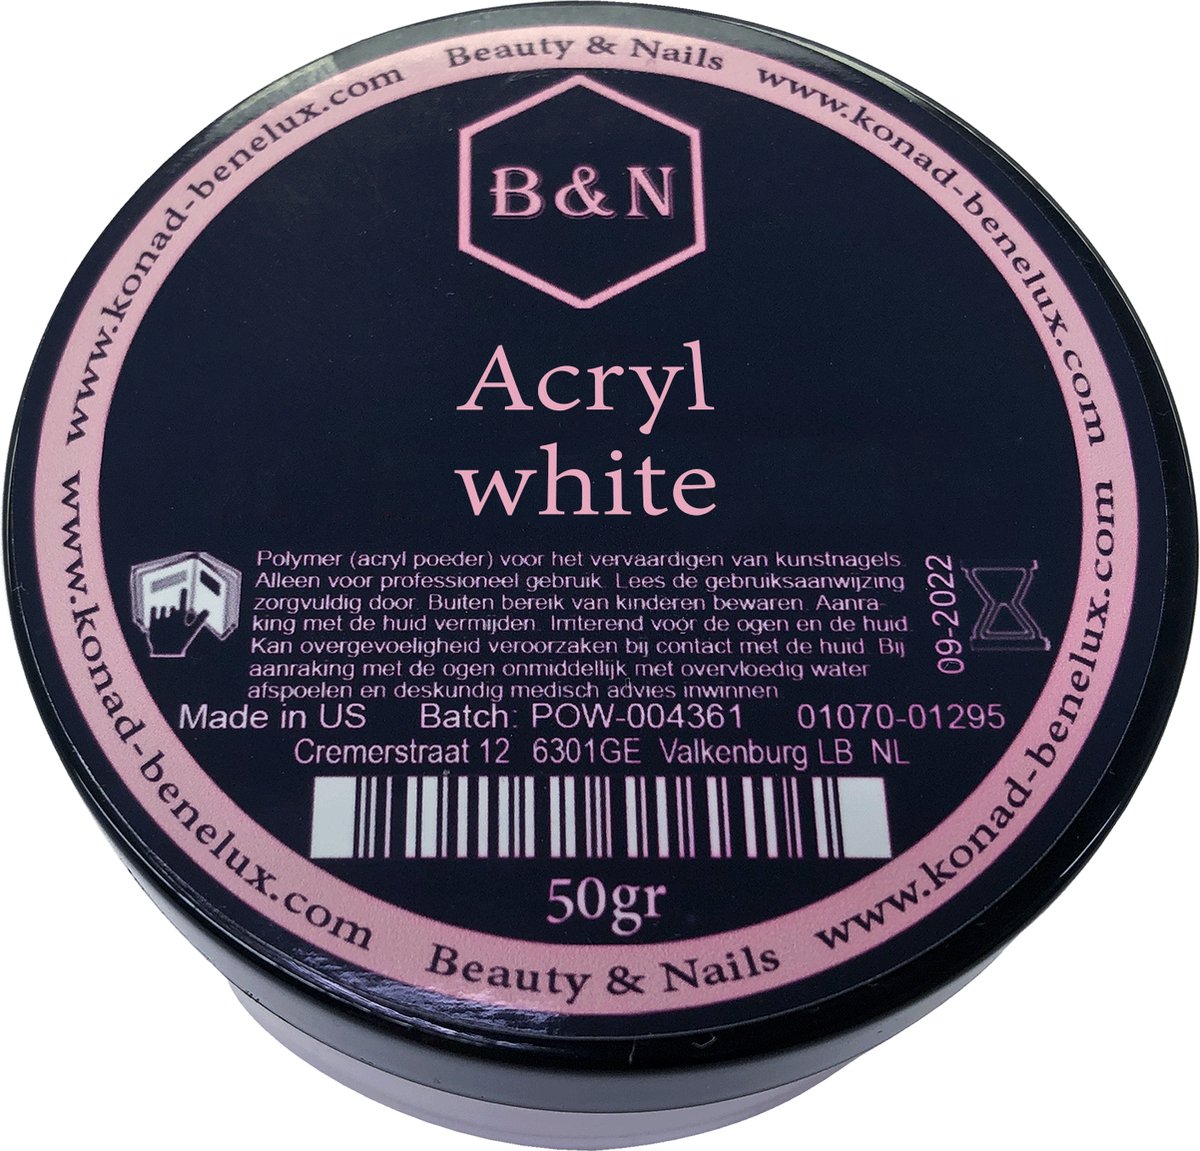 Acryl - white - 50 gr | B&N - acrylpoeder - VEGAN - acrylpoeder